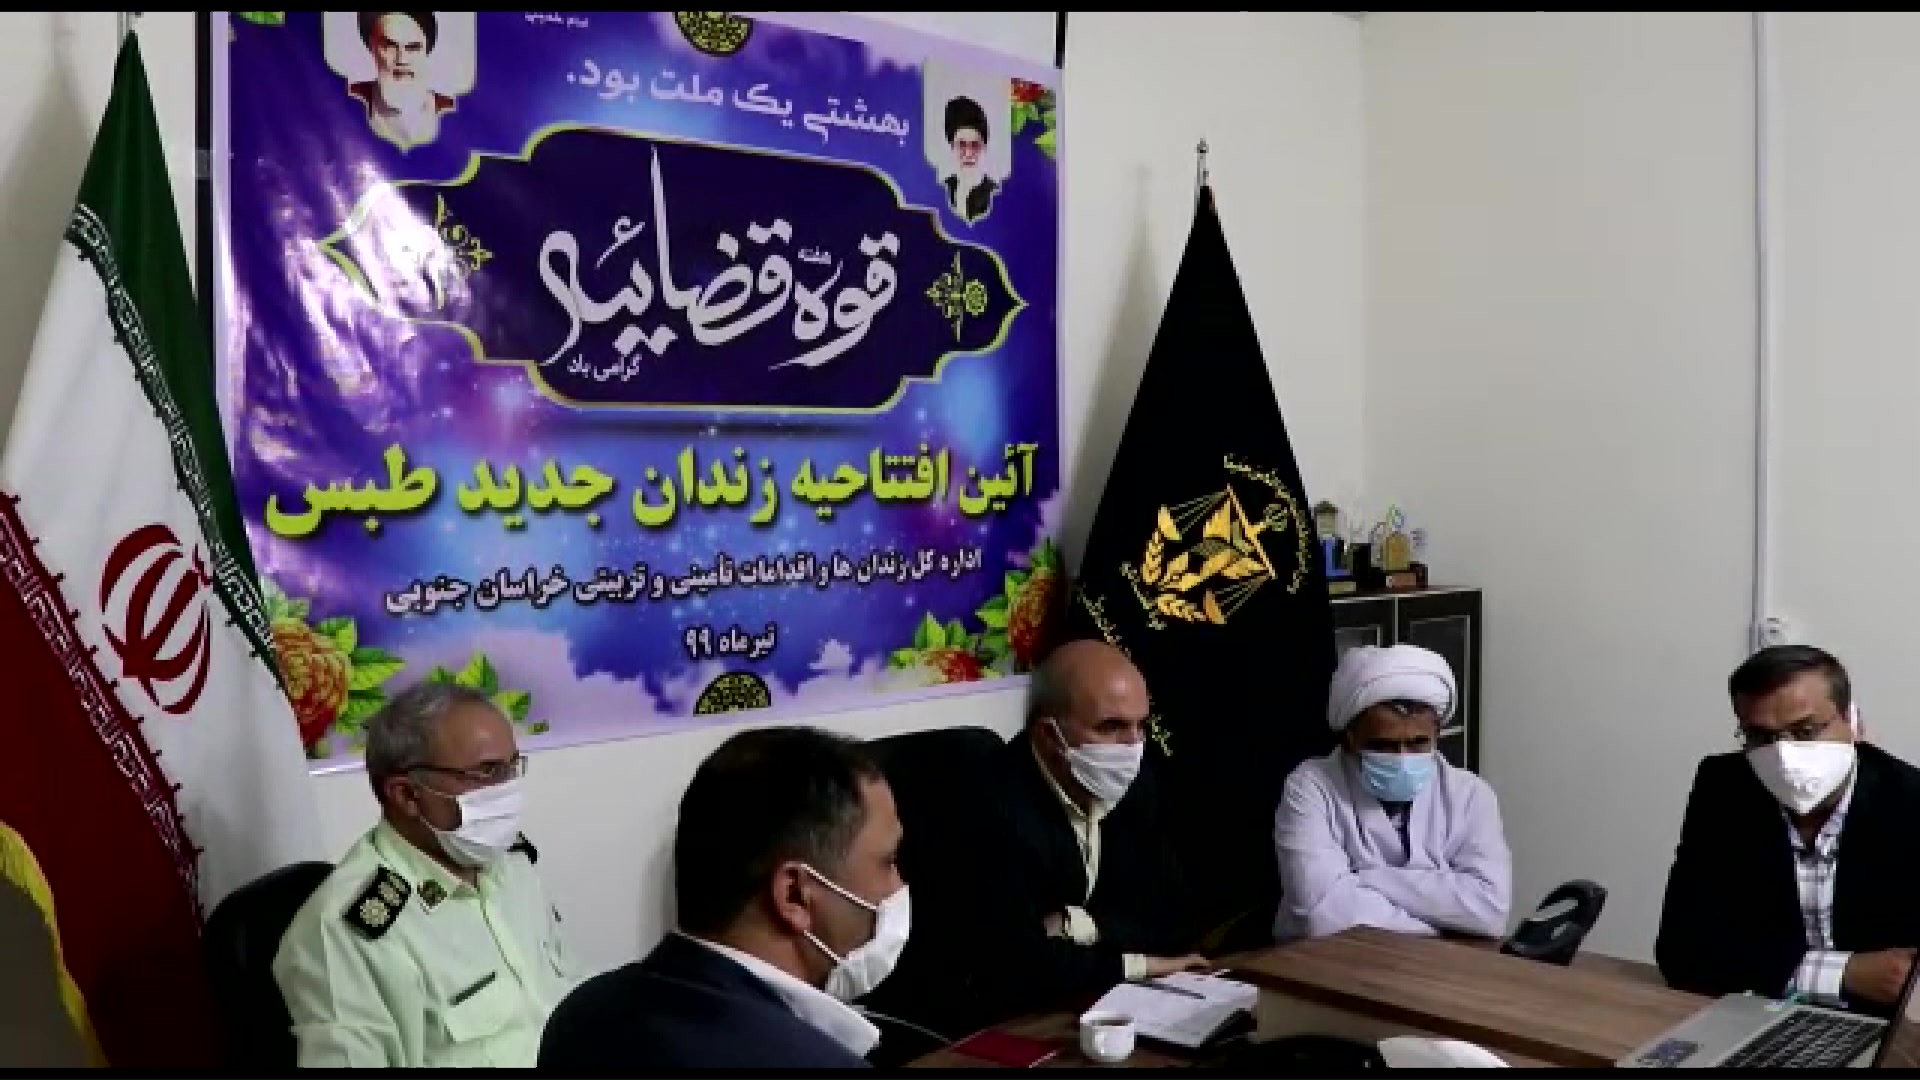 افتتاح رسمی زندان طبس به صورت ویدئو کنفرانس با حضور رئیس قوه قضاییه